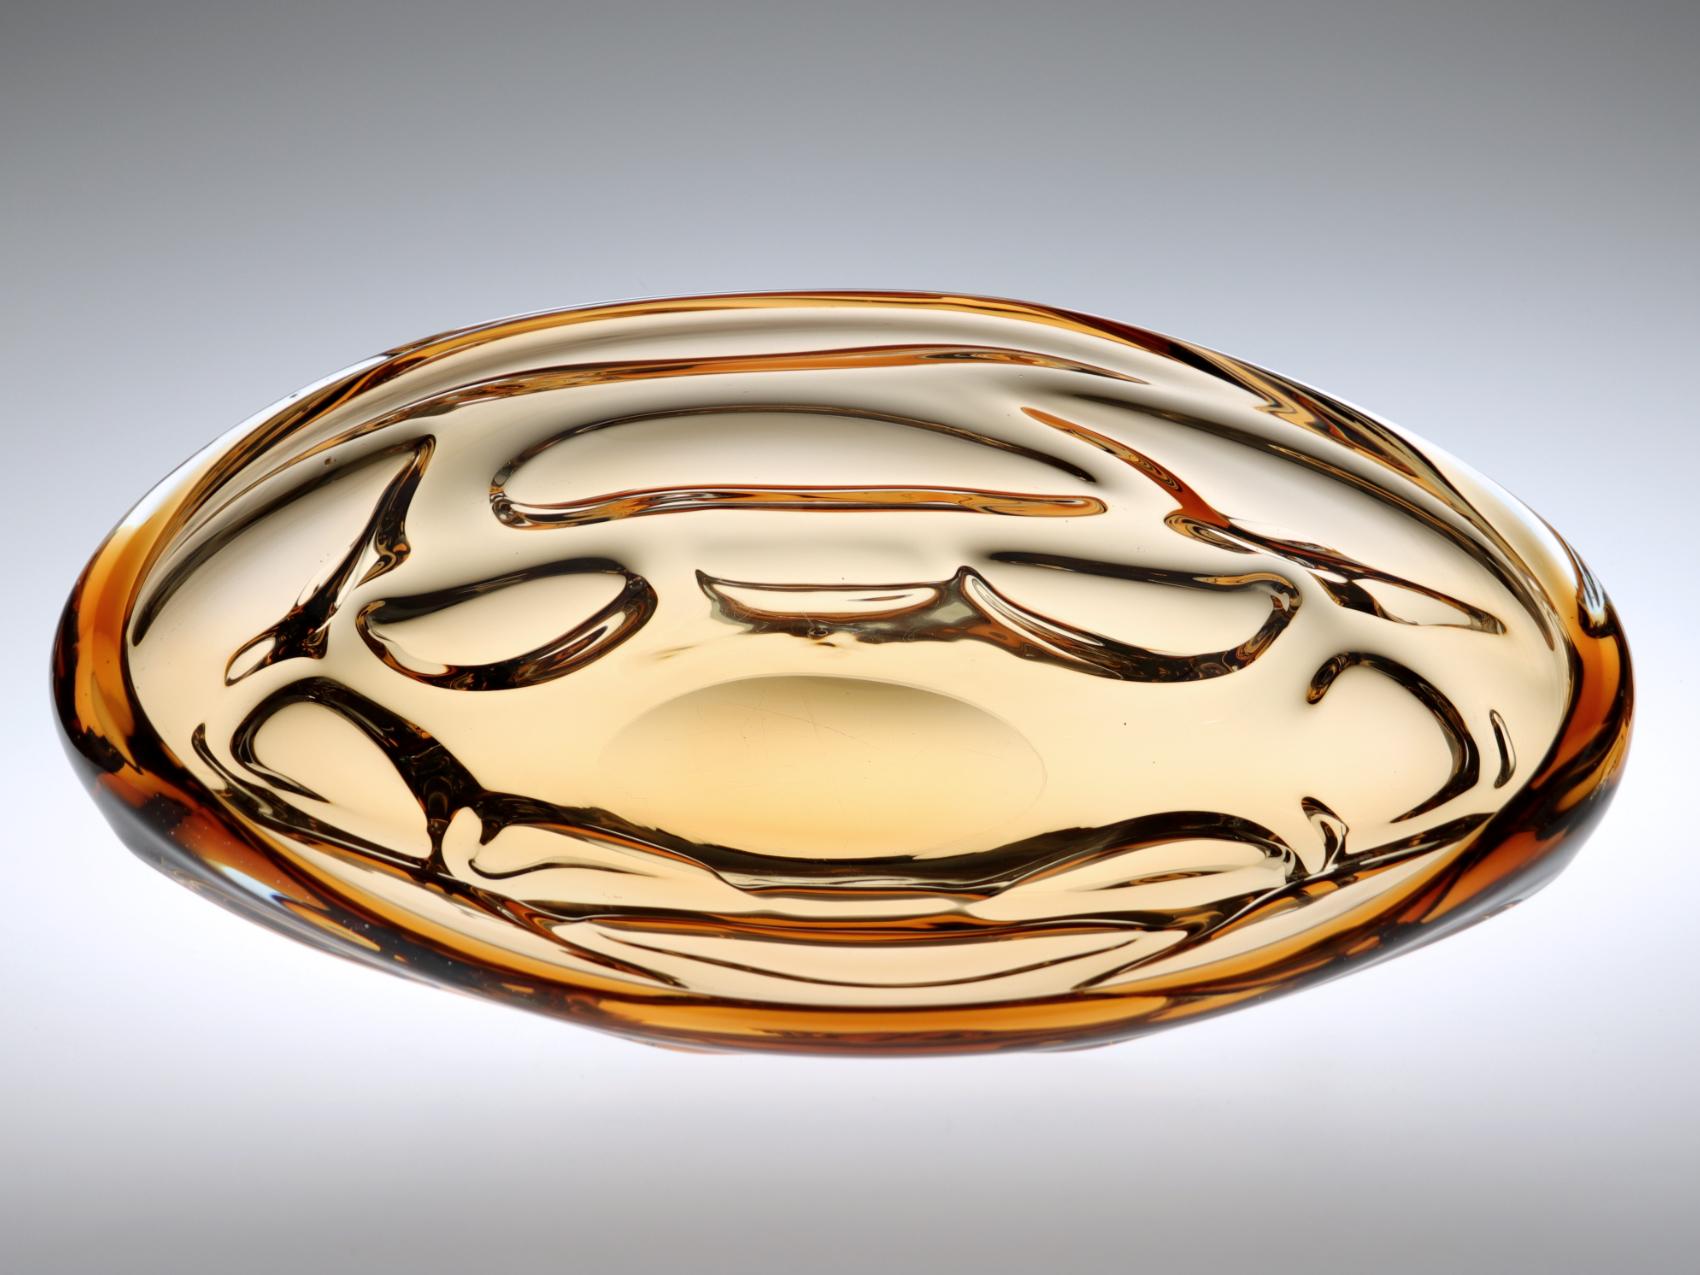 Molded Czechoslovakian Amber Art Glass Bowl by Jan Beranek for Skrdlovice, 1960s